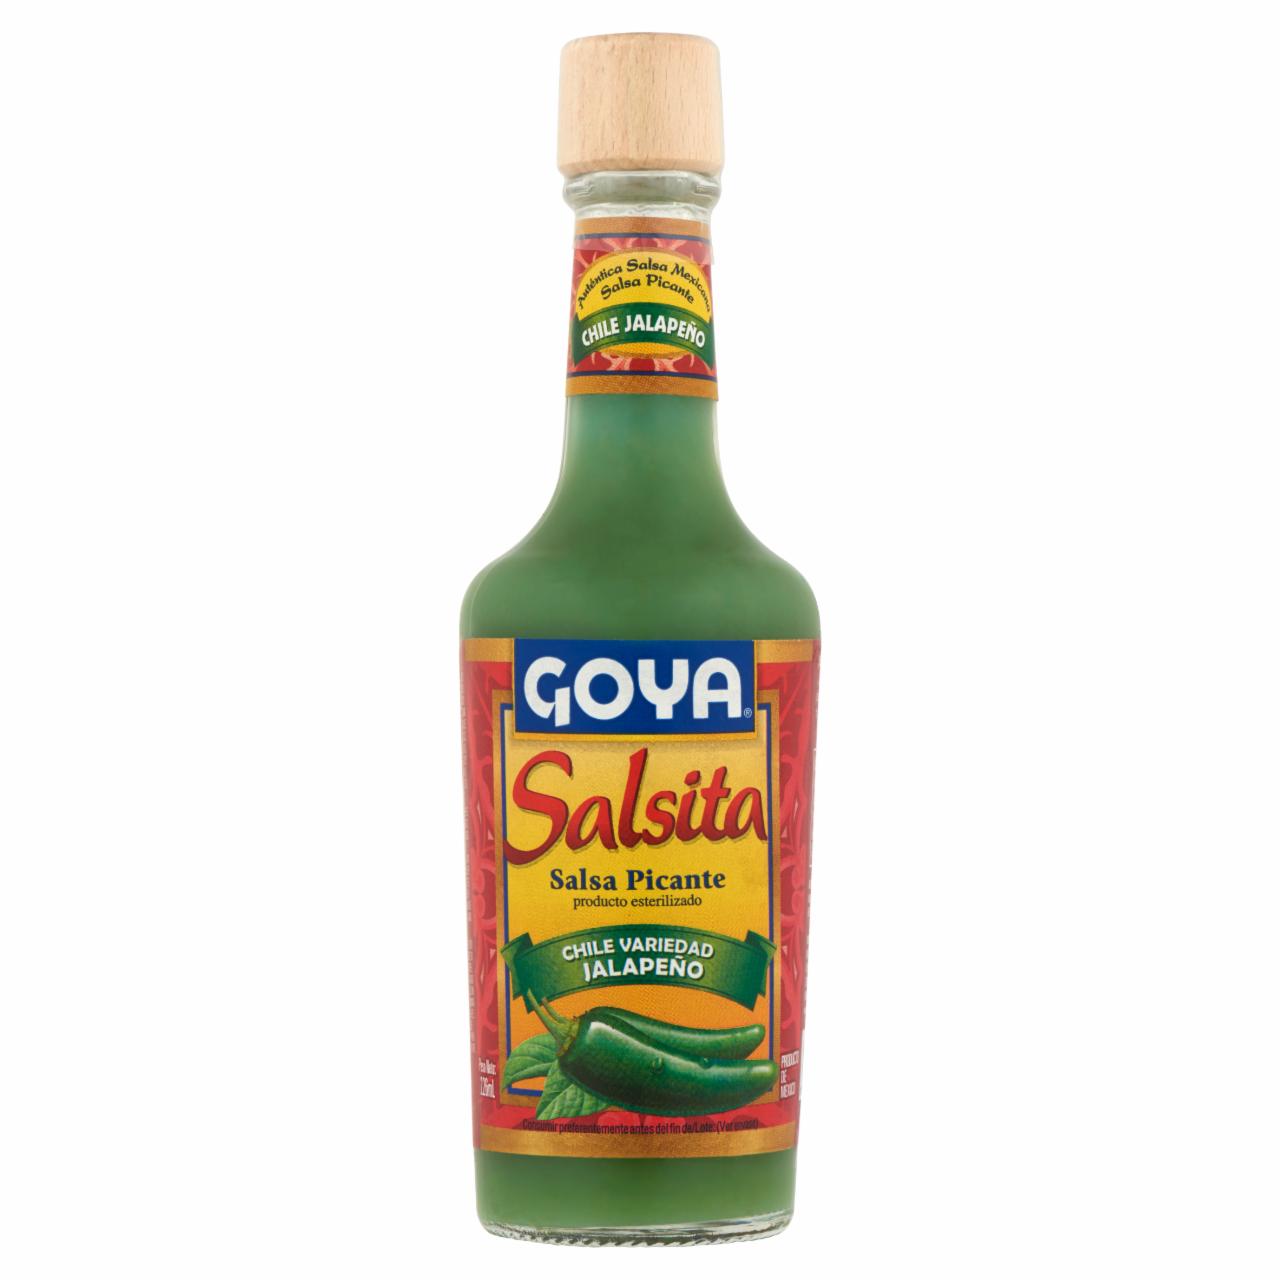 Képek - Goya Salsita fűszeres csípős szósz Jalapeño chili paprikából 226 ml